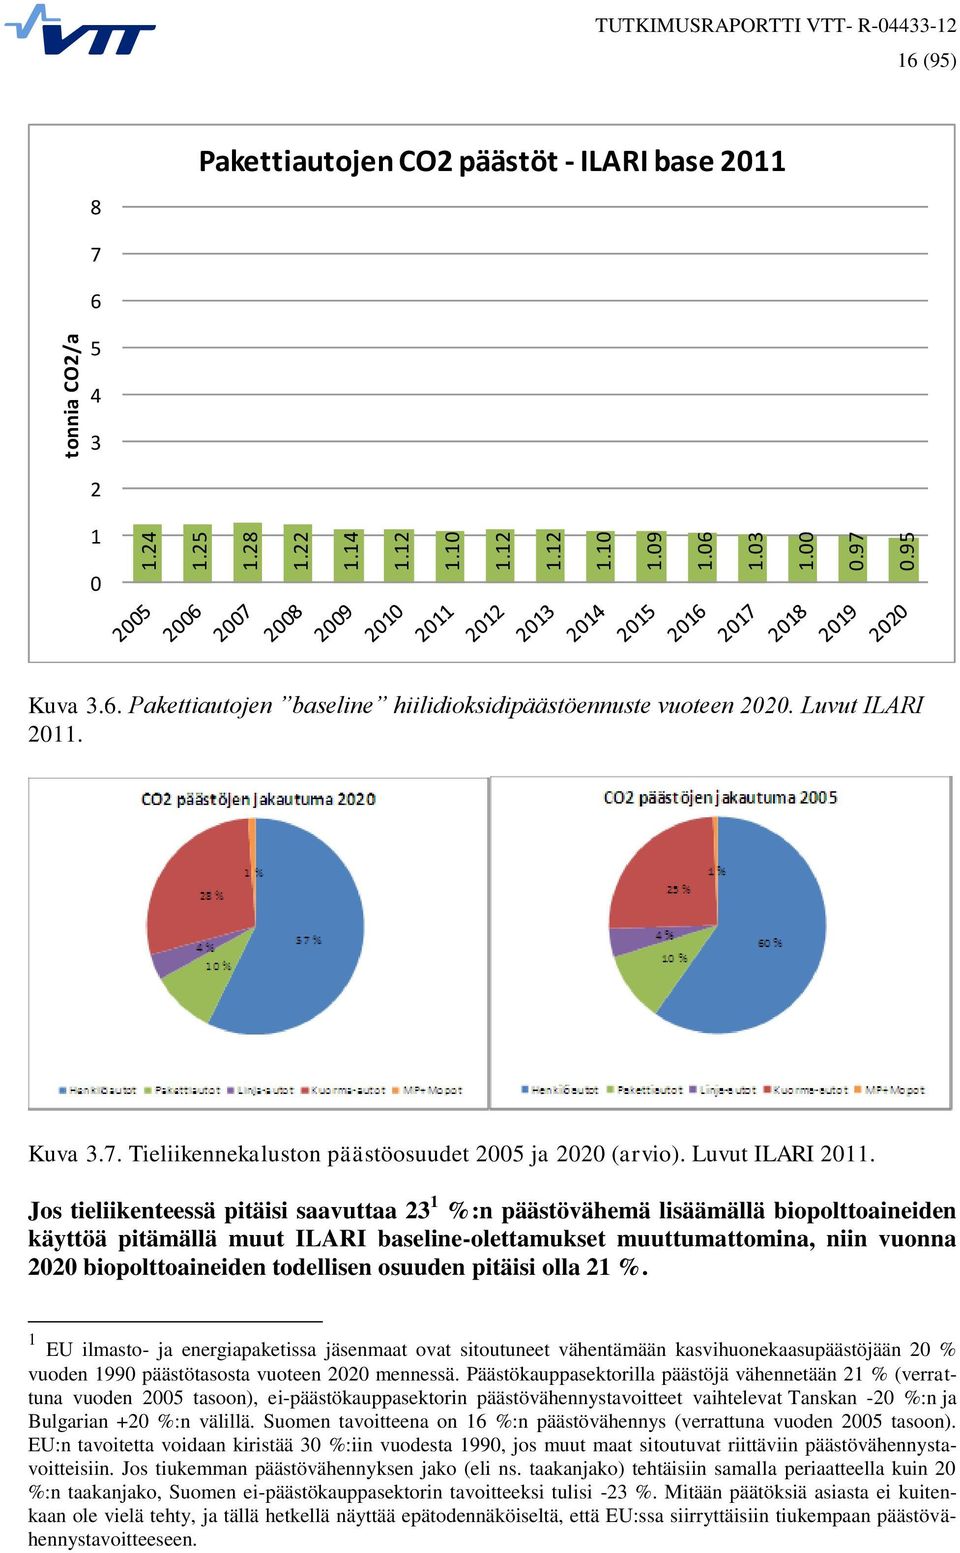 Luvut ILARI 2011. Kuva 3.7. Tieliikennekaluston päästöosuudet 2005 ja 2020 (arvio). Luvut ILARI 2011.